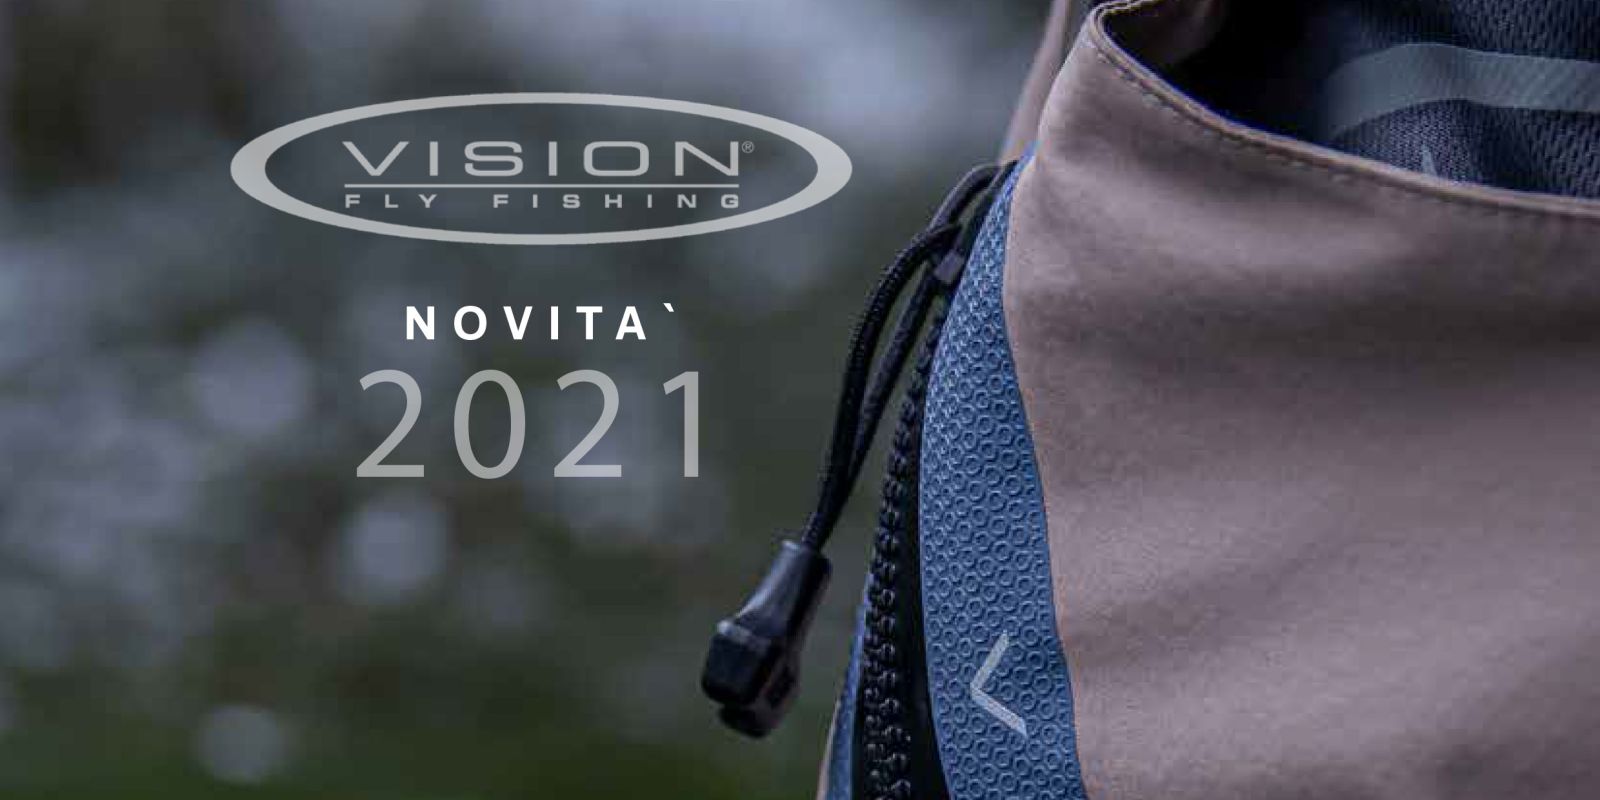 catalogo vision pesca  mosca fly fishing novita 2021